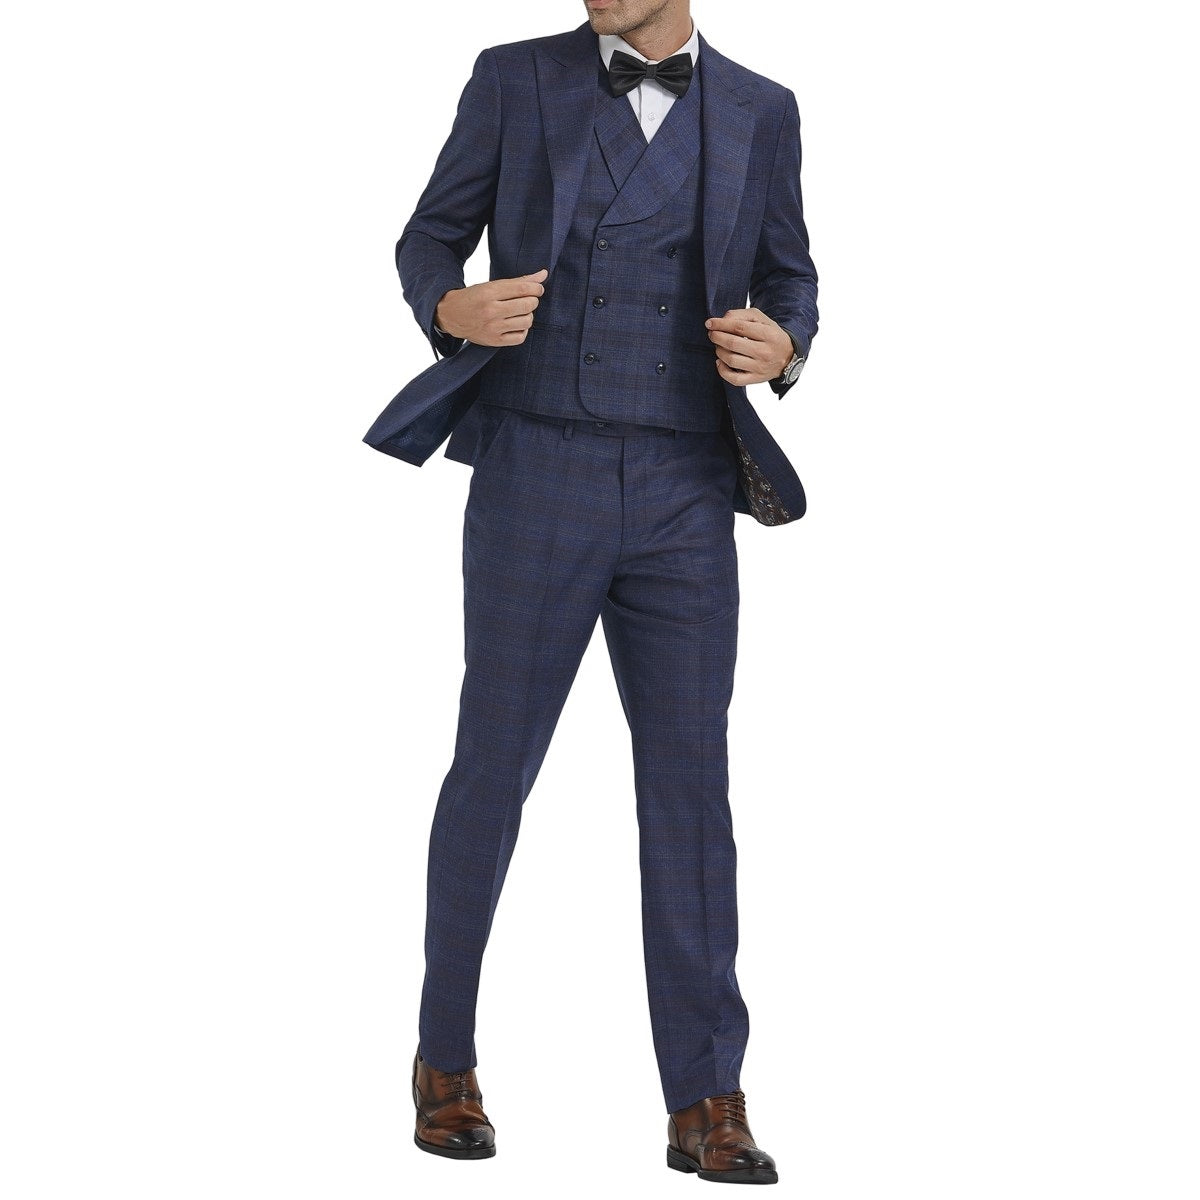 Traje Formal para Hombre TA-M354SK-04 - Formal Suit for Men